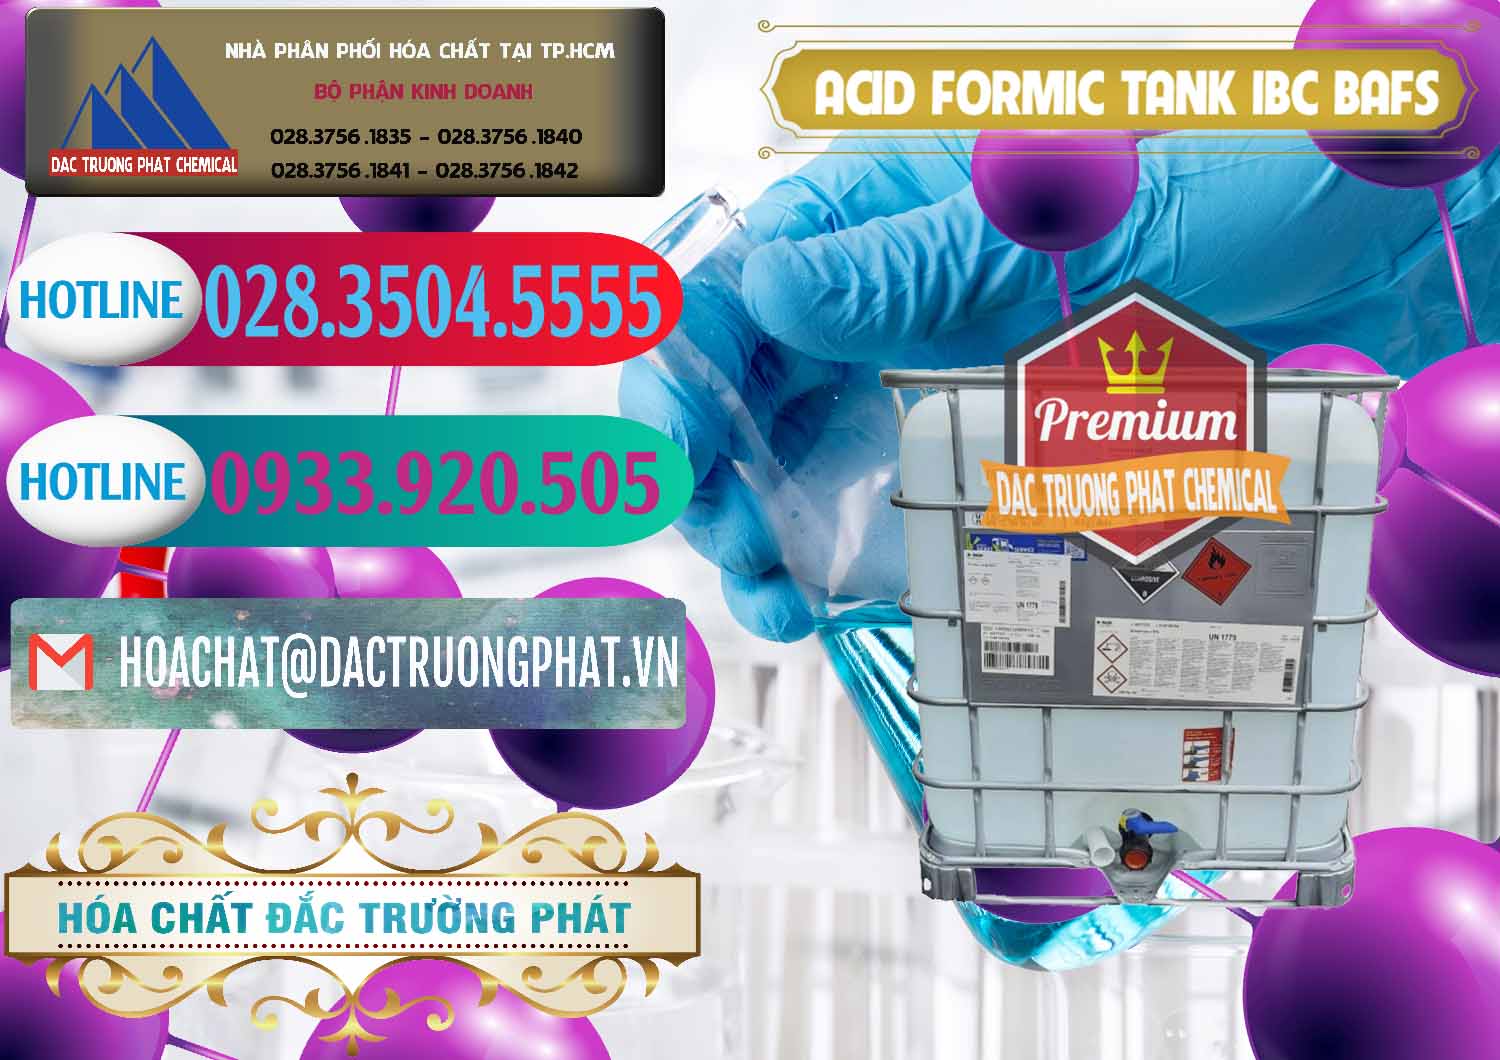 Nơi chuyên nhập khẩu và bán Acid Formic - Axit Formic Tank - Bồn IBC BASF Đức - 0366 - Cty nhập khẩu ( phân phối ) hóa chất tại TP.HCM - truongphat.vn